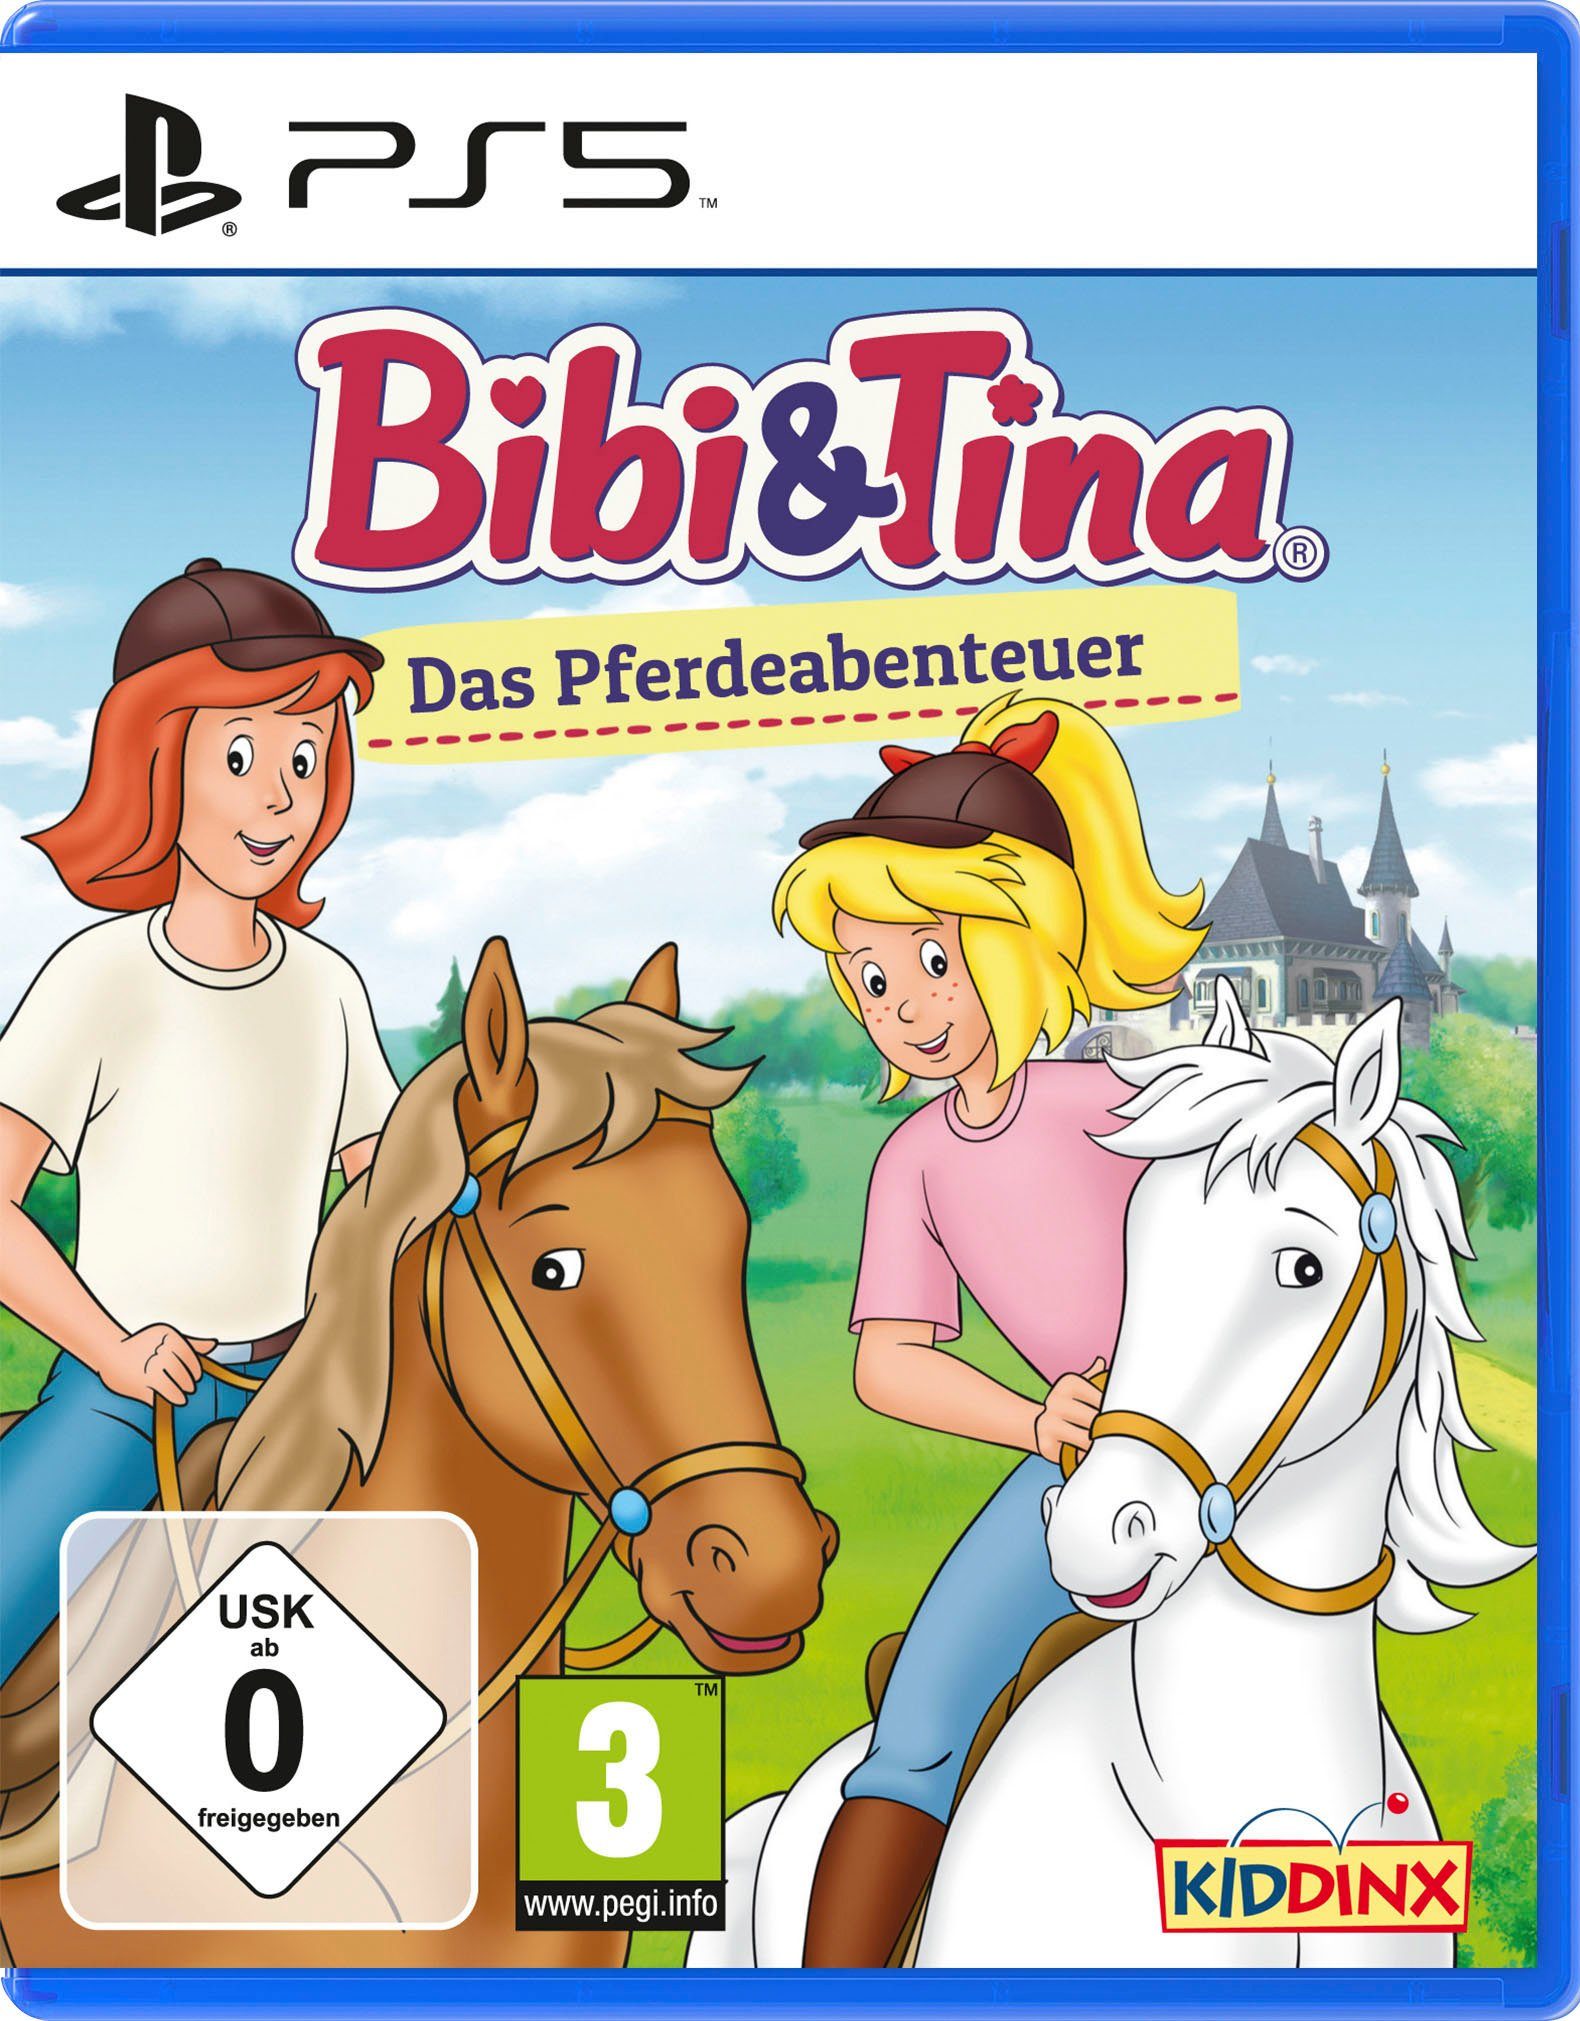 Bibi PlayStation Das Pferdeabenteuer & 5 Tina: